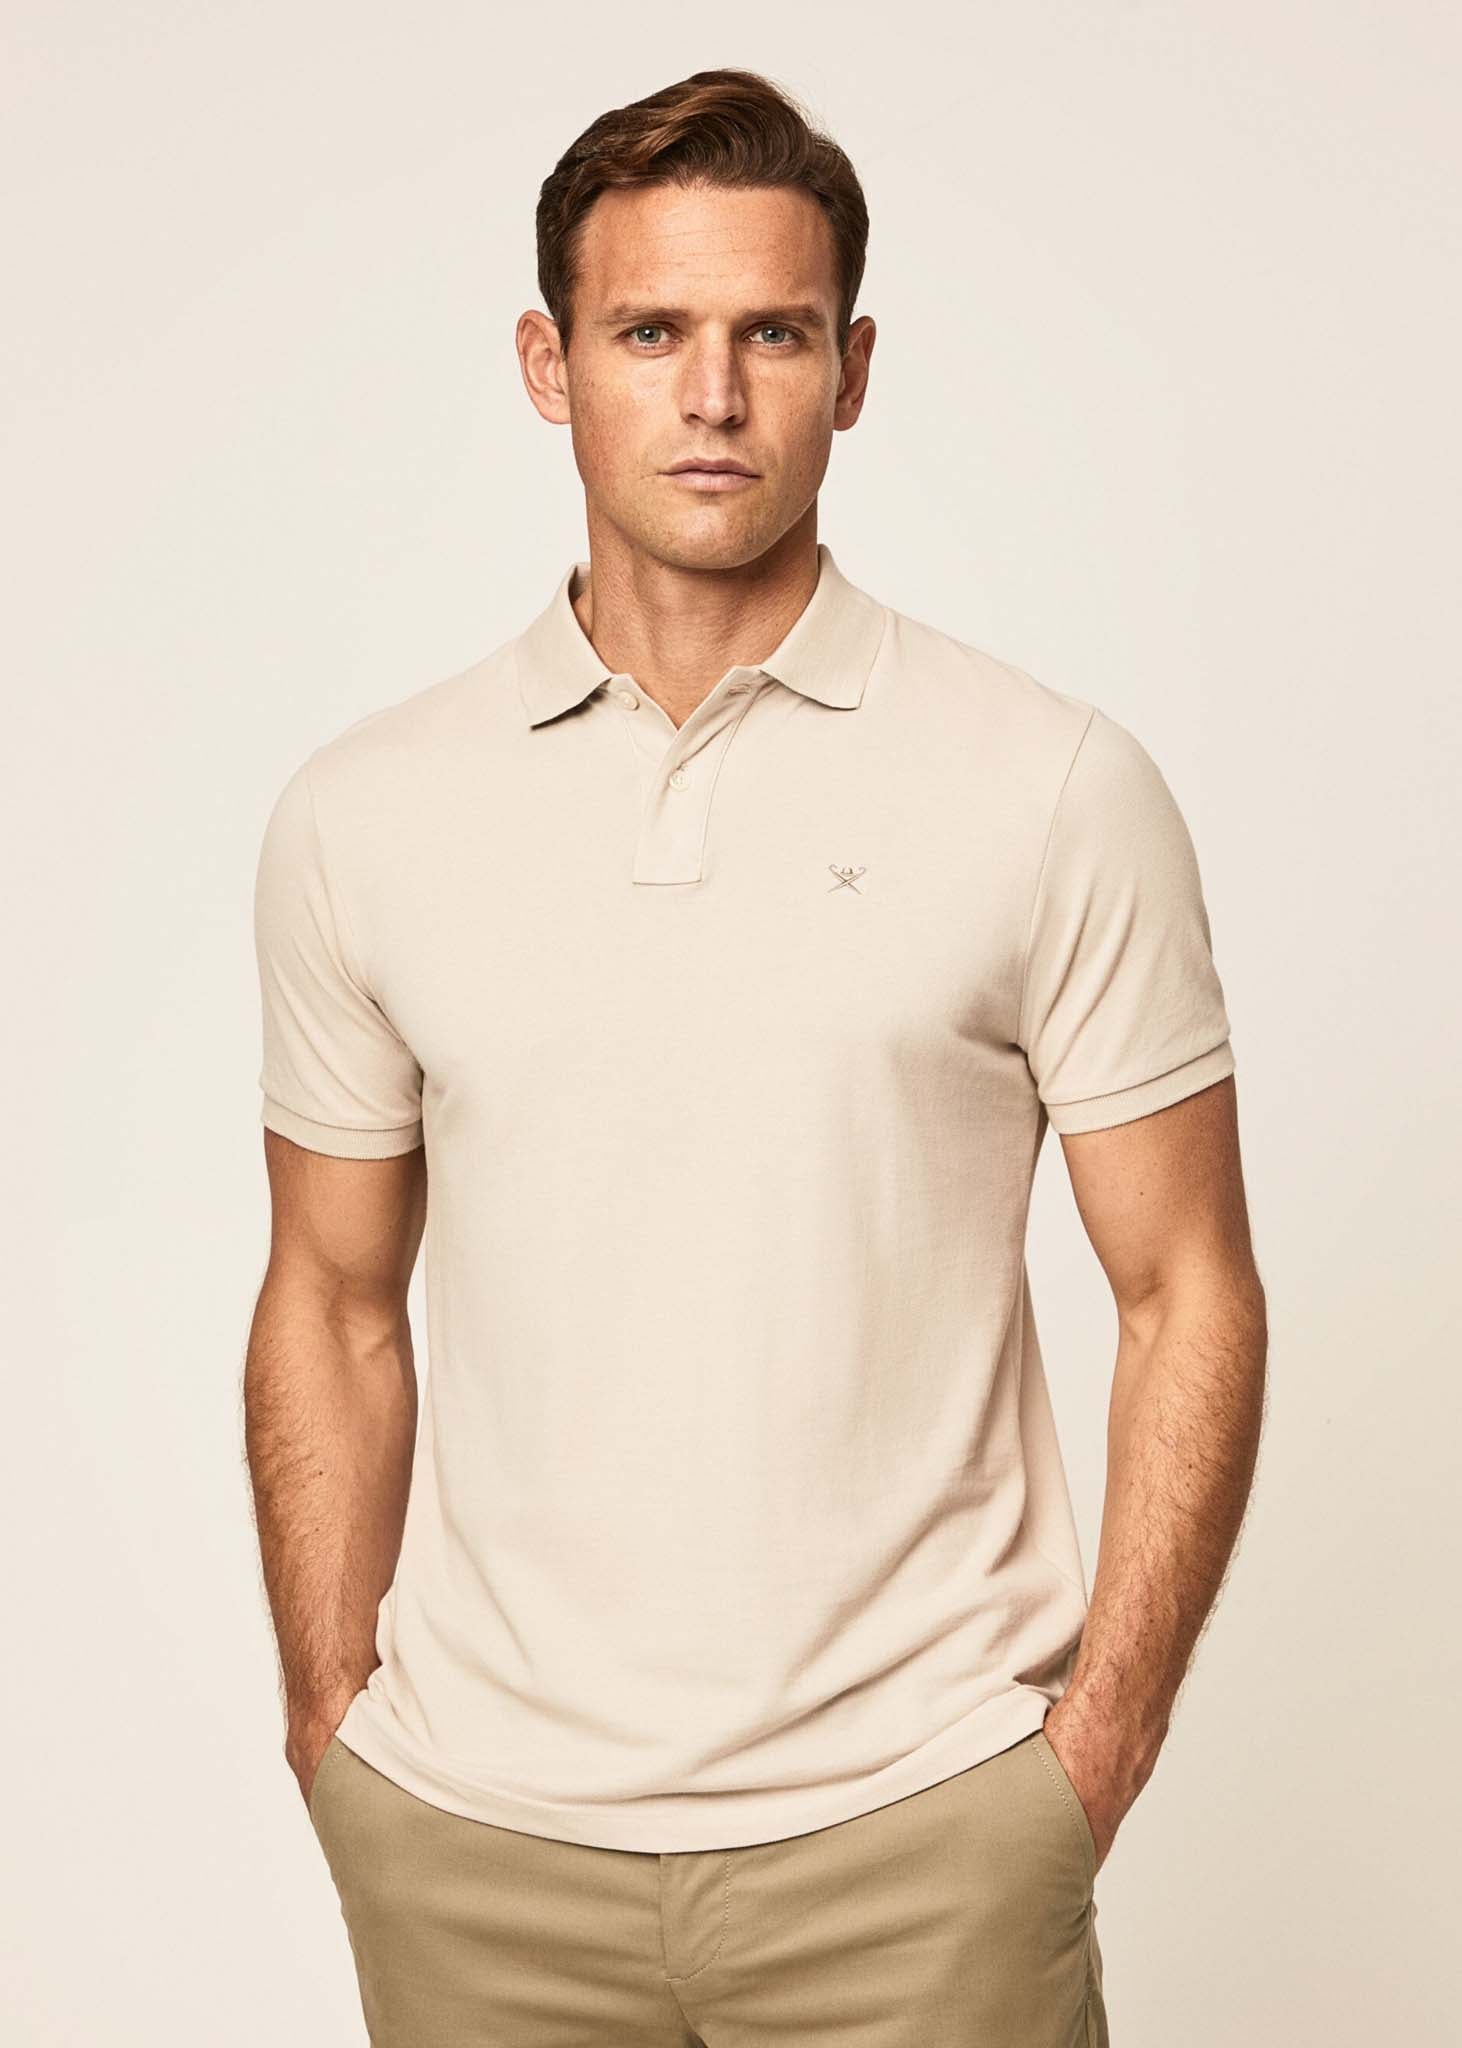 Hackett London Polo's  Cotton pique polo shirt - silver lining 